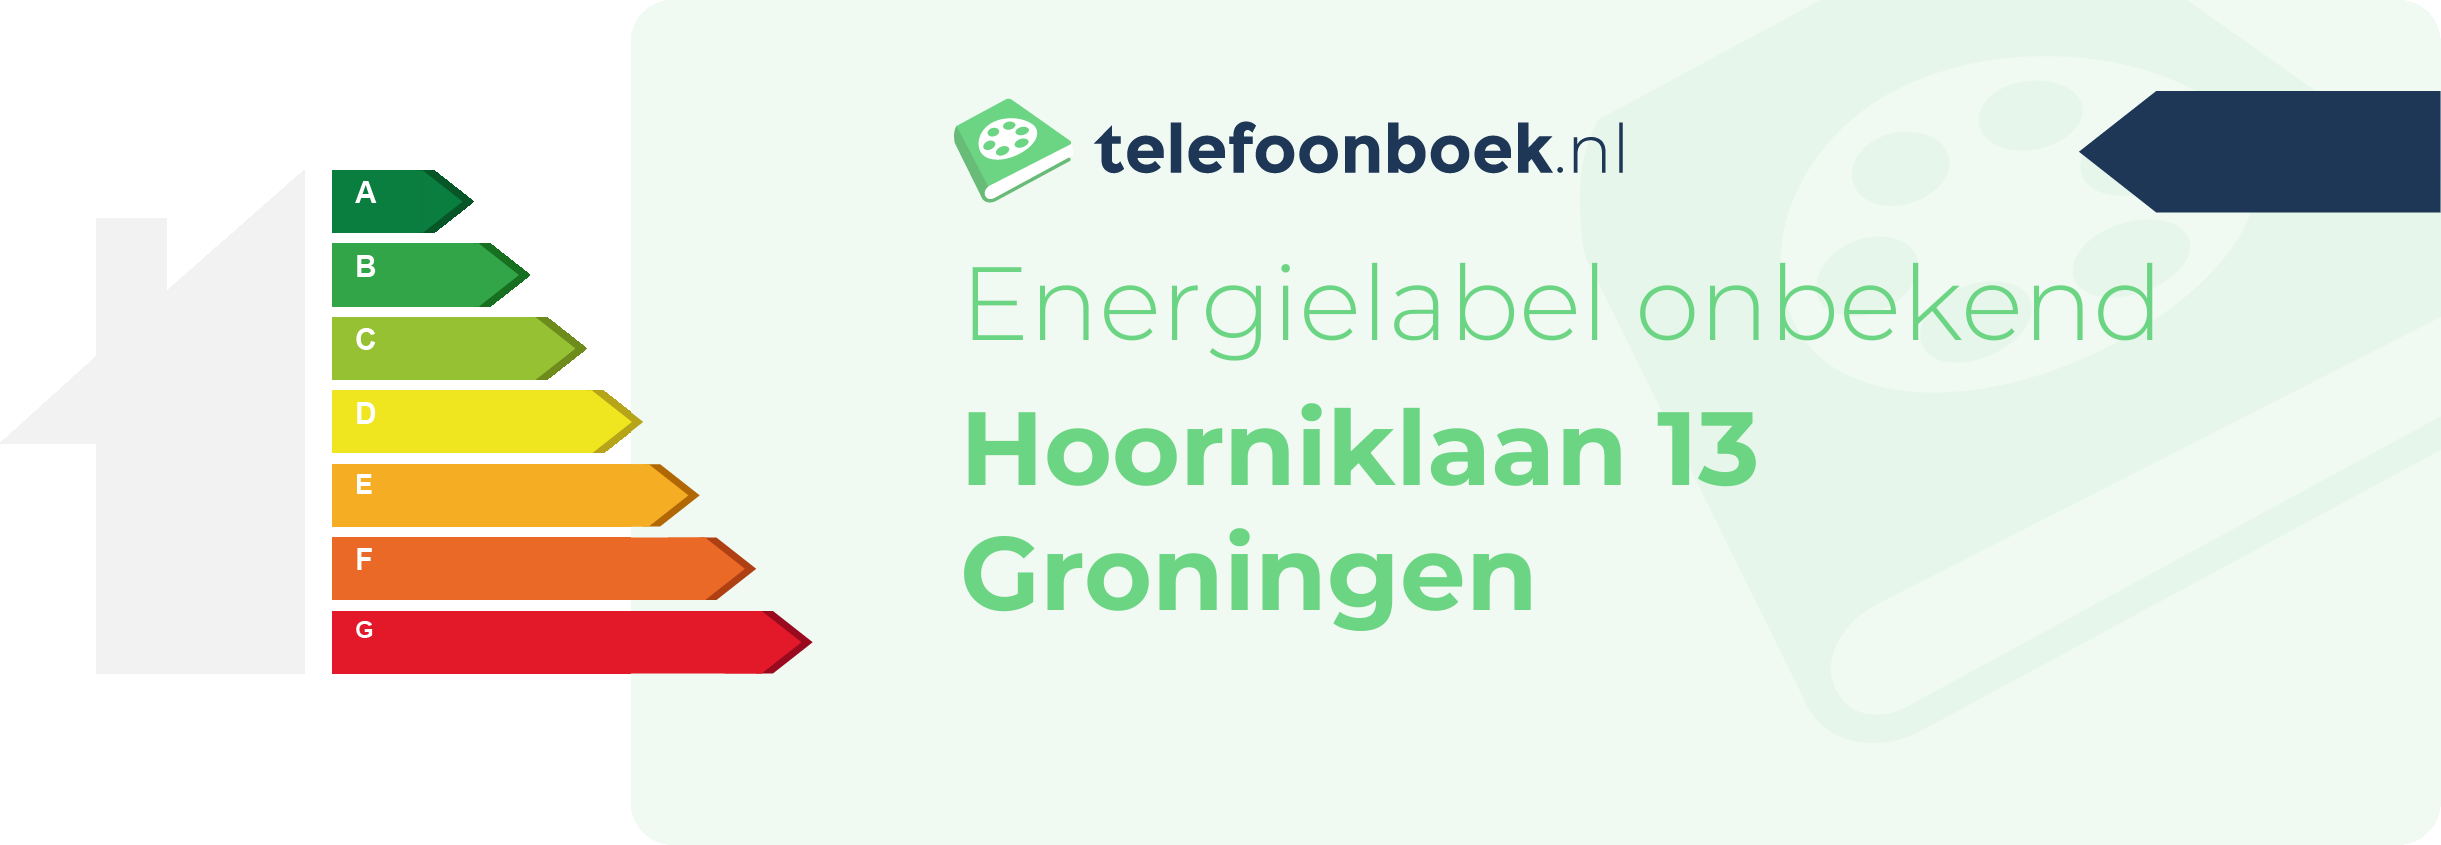 Energielabel Hoorniklaan 13 Groningen